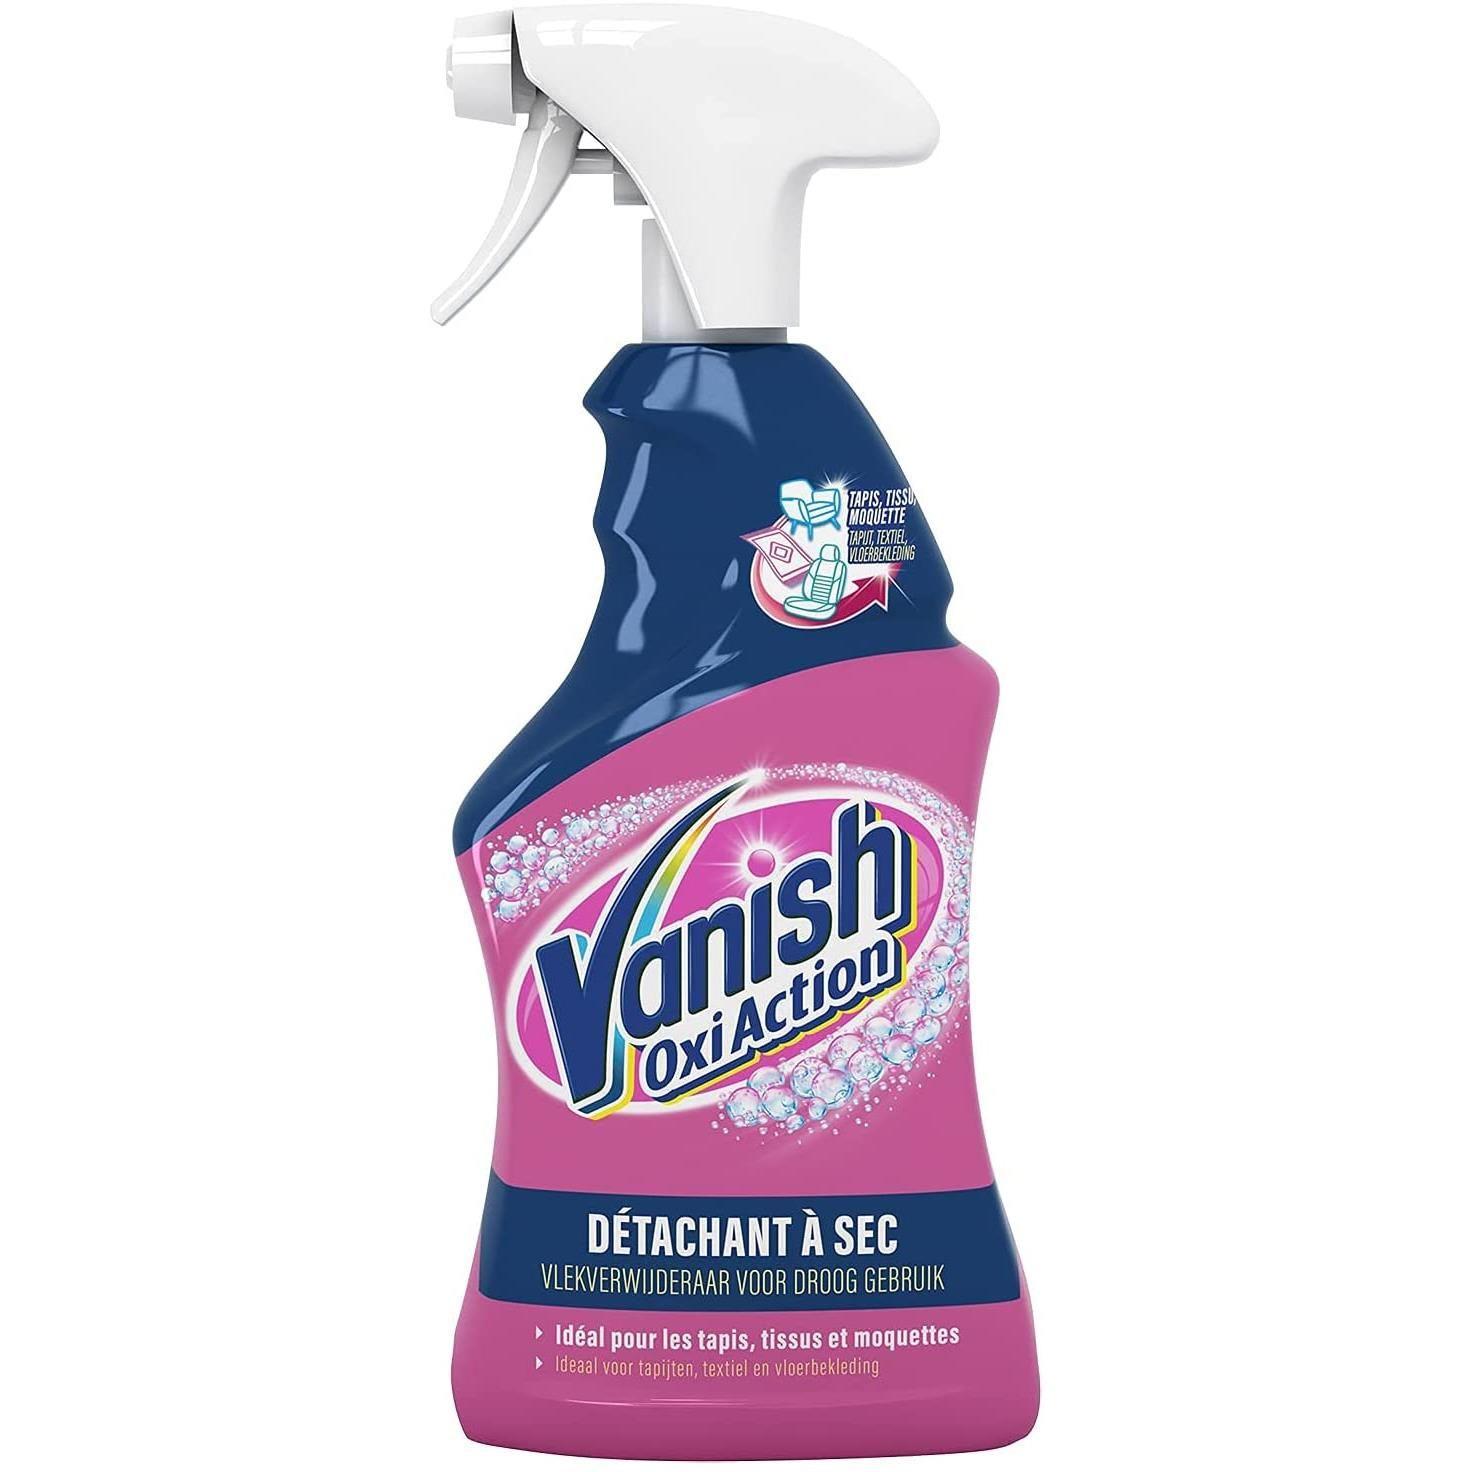 Vanish Oxi Action Spray nettoyant et détachant pour tapis et